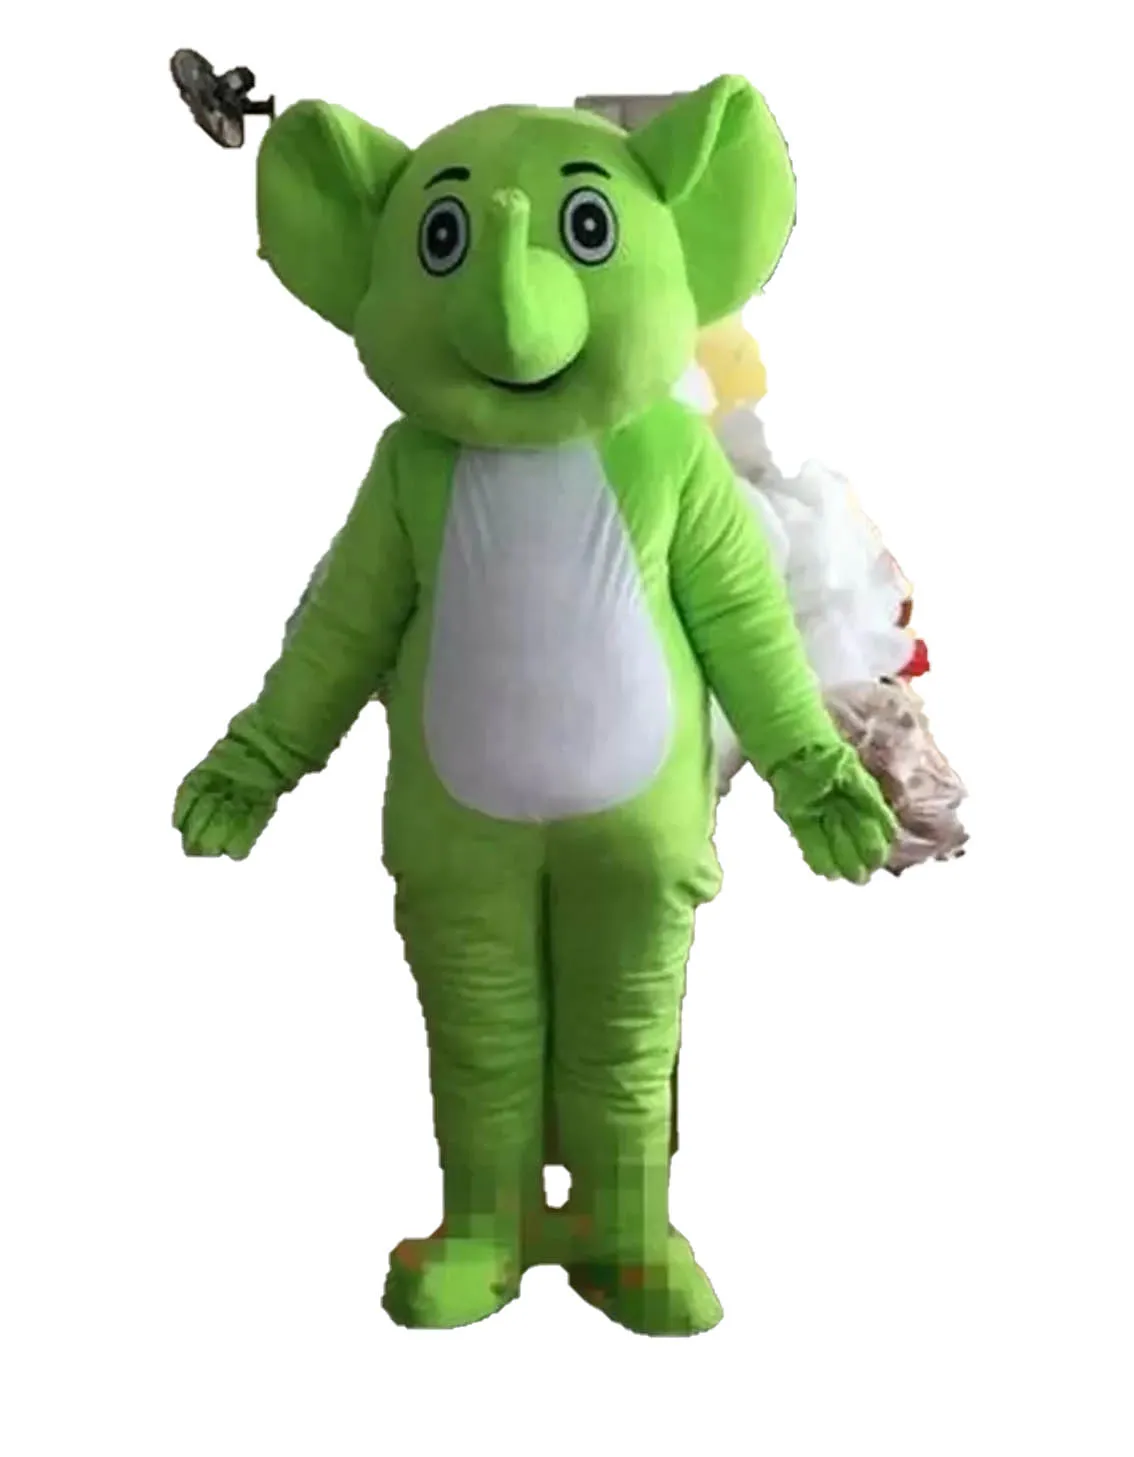 Alta Qualidade Verde Elefante Mascote Trajes Halloween Fantasia Vestido Dos Desenhos Animados Personagens Carnaval Xmas Páscoa Publicidade Publicidade Festa de Aniversário Roupa